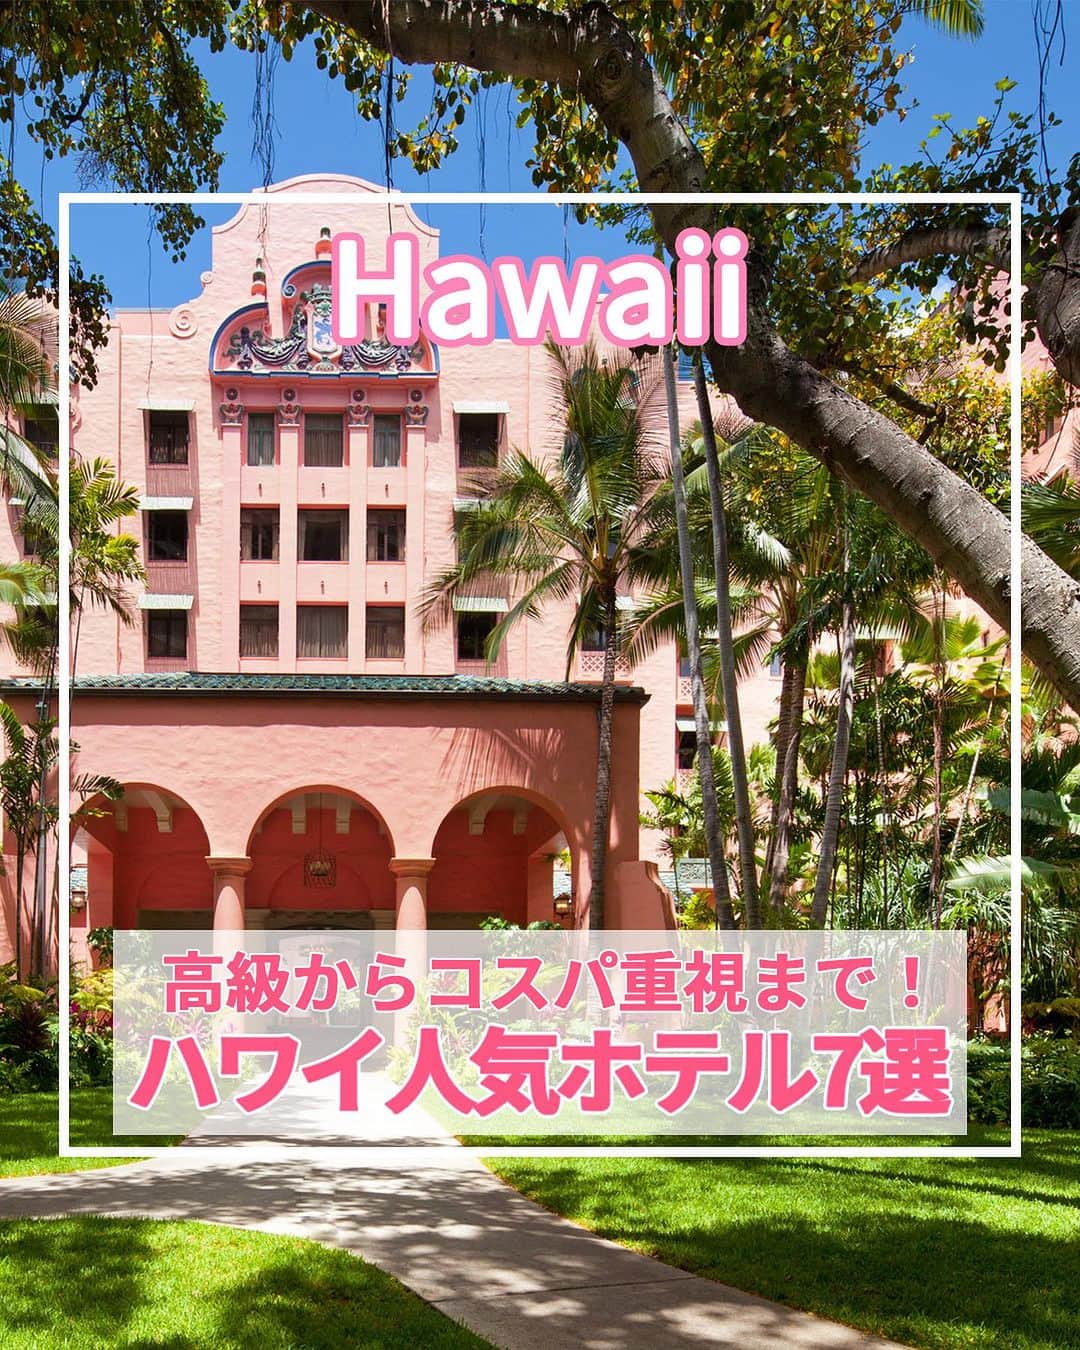 旅工房公式のインスタグラム：「＼旅行会社社員のおすすめ！ハワイの人気ホテル紹介！／  #ハワイ #ハワイホテル  ハワイツアー👉https://www.tabikobo.com/area/hawaii/hawaii/   こんにちは！☺  今回は、旅行で大人気のハワイの人気ホテルを紹介します！👀💛  また、旅Pocketではハワイおすすめホテルランキングも特集しています！ぜひハイライトから旅Pocketの記事もチェックしてみてください✨   ぜひハワイ旅行の参考にしてみてくださいね＼(^o^)／ 💚   ━━━━━━━━━━━━━━━ ▽  📍ハレクラニ （@halekulanihotel、@halekulani.japan）  「天国にふさわしい館」の由来通りのラグジュアリーホテル！  創業から1世紀を越えた今も変わらない心からのおもてなしが味わえます。  水色と白を基調とした客室はゆったりとした広さ♪  海外では珍しく深いバスタブがあって寛げるのも嬉しいポイントの1つです。   📍ロイヤル ハワイアン ラグジュアリー コレクション リゾート （@royal_hawaiian、@royalhawaiianjp）  太平洋のピンクパレスと愛されるワイキキビーチの代表的なホテル♪  ワイキキの中心にありながらも、椰子の木が揺れる清々しい自然豊かな中庭も魅力です！  ホテル内にあるビーチフロントのレストランではピンクの見た目がかわいいピンクパレス・パンケーキが食べられます◎   📍トランプ インターナショナル ホテル ワイキキ（@trumpwaikiki、@trump_hotel_waikiki）  海を一望できるインフィニティプール、高級レストラン、ザ・スパアットトランプなど、最高のおもてなしを味わえるホテルです。  コンドミニアムタイプなので室内には高級家電を完備したフルキッチンまたは簡易キッチンがあり、ファミリーや大人のグループ旅行にもおすすめです！   📍アロヒラニ リゾート ワイキキ ビーチ（@alohilaniresort、@alohilaniresort.jp）  プライベートラナイ（一部の客室を除く）のある客室は、清潔感がありアイランドモダンな雰囲気♪  5階にはインフィニティープールやプールバー、おしゃれなプールデッキがありビーチを眺めることもできます！  ワイキキビーチまで30秒という観光に便利な立地もポイント！   📍シェラトン・ワイキキ（@sheratonwaikiki、@sheratonwaikikijp）  食事やショッピング、トロリーに乗るにも便利な場所で、ワイキキビーチが目の前！  子どもから大人まで楽しめるウォータースライダーやジャグジーのある、「Helumoa Playground」はファミリーに大人気♪  16歳以上のホテルゲストはインフィニティプールも利用できますよ！   📍アストン アット ザ ワイキキ バニアン  大型施設で、長期滞在者、リピーターに人気のコンドミニアム！  全室ワンベッドルームスイートで部屋は広く、自宅でゆったりとくつろいでいるような気分♪  レクリエーションスペースでは、バーベキューグリルが利用が可能なので、家族や友人とワイワイ過ごすのもおすすめ◎   📍ハイアット プレイス ワイキキビーチ（@hyattplacewaikiki）  ワイキキの東側、クヒオビーチやホノルル動物園まで徒歩5分！  広々とした客室が特徴で、ホテル全館に無料Wi-Fiを完備されています。  また、ゲストキッチンでは毎日できたてのコンチネンタル朝食を  無料で食べることができるのも嬉しいポイント♪   ※営業時間・内容は変更になる場合がございます。詳しくは各ホームページをご確認ください。   海外・国内問わず、素敵なスポットやグルメ、アイテムの写真にはぜひ #旅工房 や @tabikobo をタグ付けして下さい💕   ━━━━━━━━━━━━━━━   ✨   #旅工房  #旅工房 #ハワイ女子旅 #ハワイ観光 #ハワイ旅行 #ハワイお土産 #ハレクラニ #ロイヤルハワイアン #ピンクパンケーキ #トランプインターナショナルホテル #アロヒラニリゾート #アストンワイキキ #ハイアットプレイス #シェラトンワイキキ #旅行好きな人と繋がりたい #海外旅行準備 #旅好き女子 #妄想旅行 #海外旅行行きたい #海外旅行計画 #旅スタグラム #海外一人旅 #旅の記録」